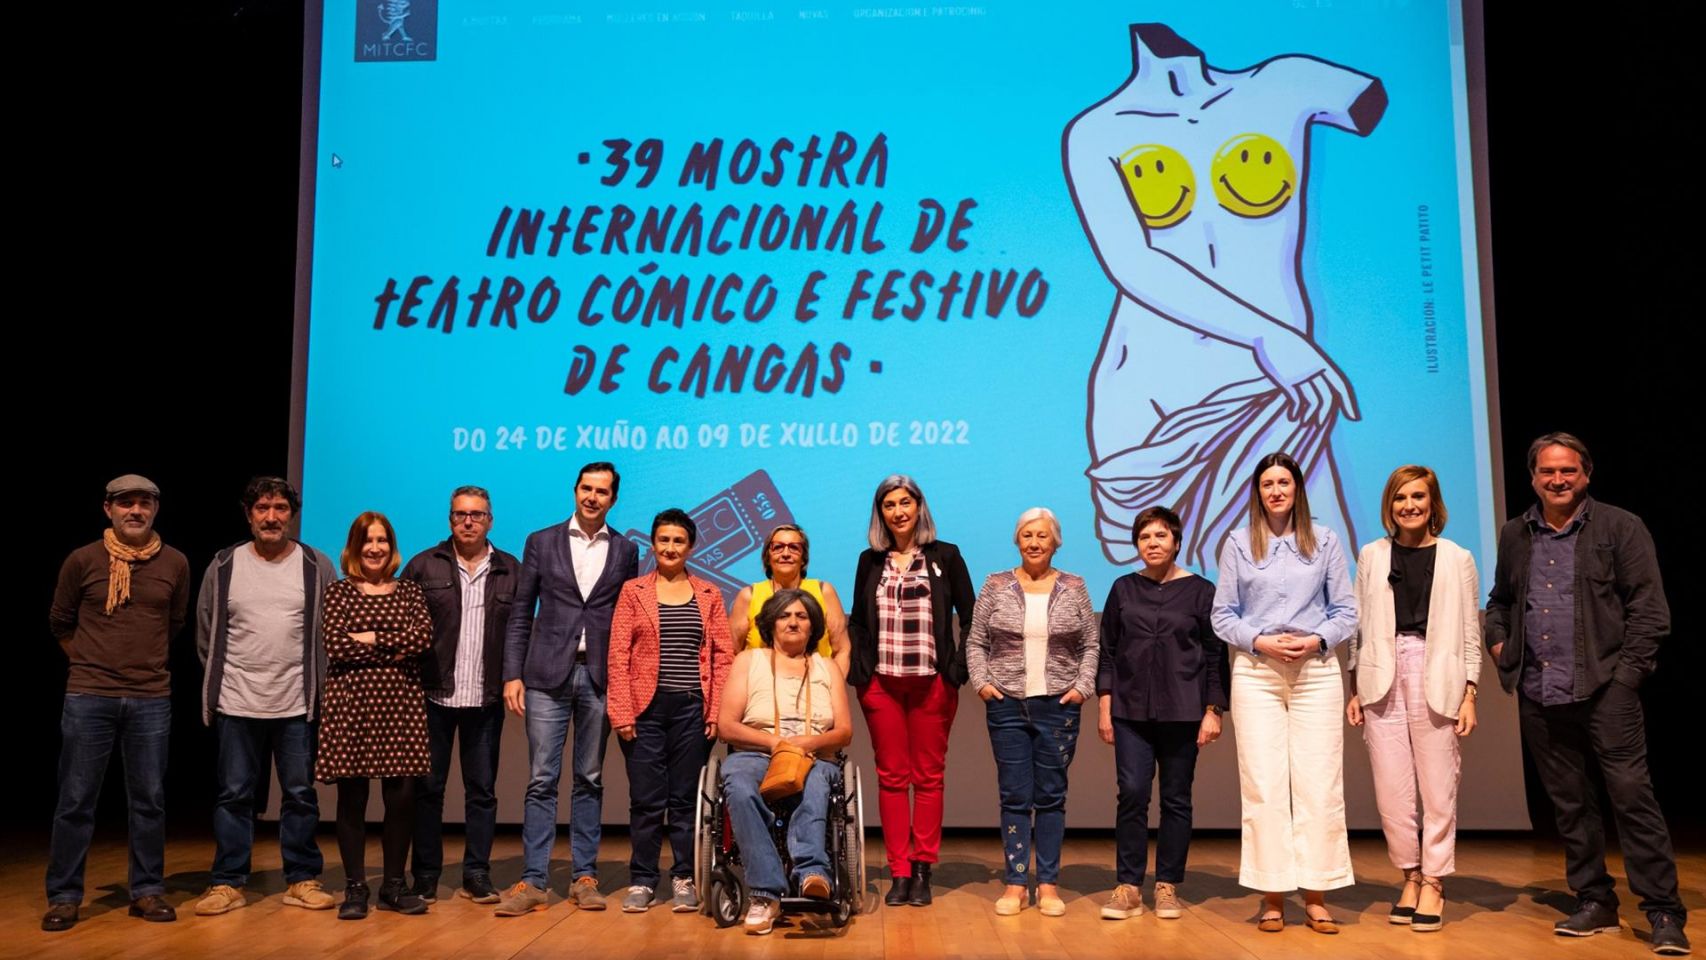 Presentación de la 39ª Mostra Internacional de Teatro Cómico e Festivo de Cangas.